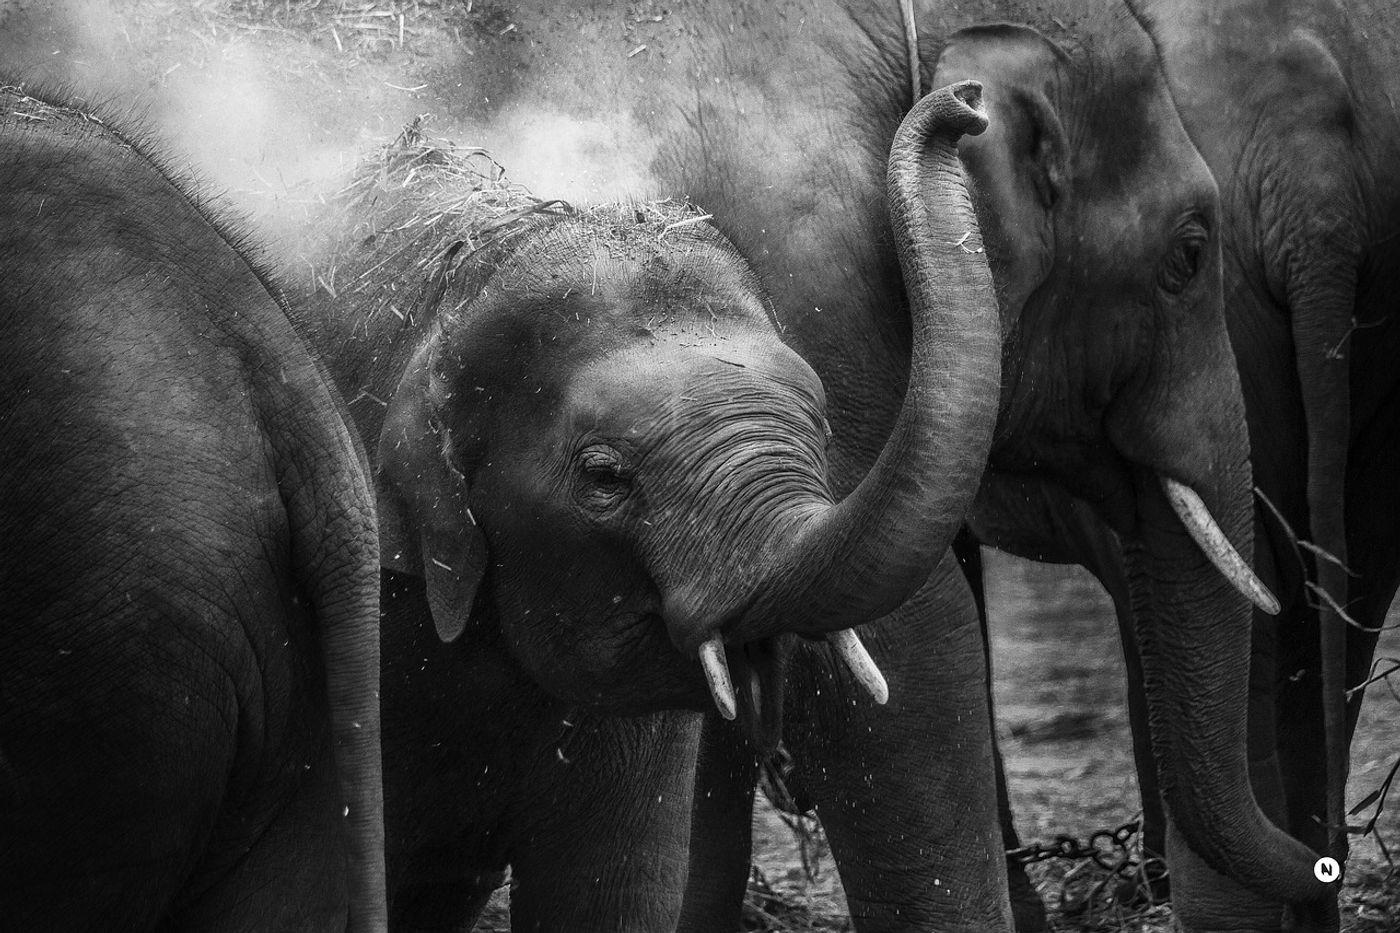 Elephants can use their trunks for a myriad of tasks.